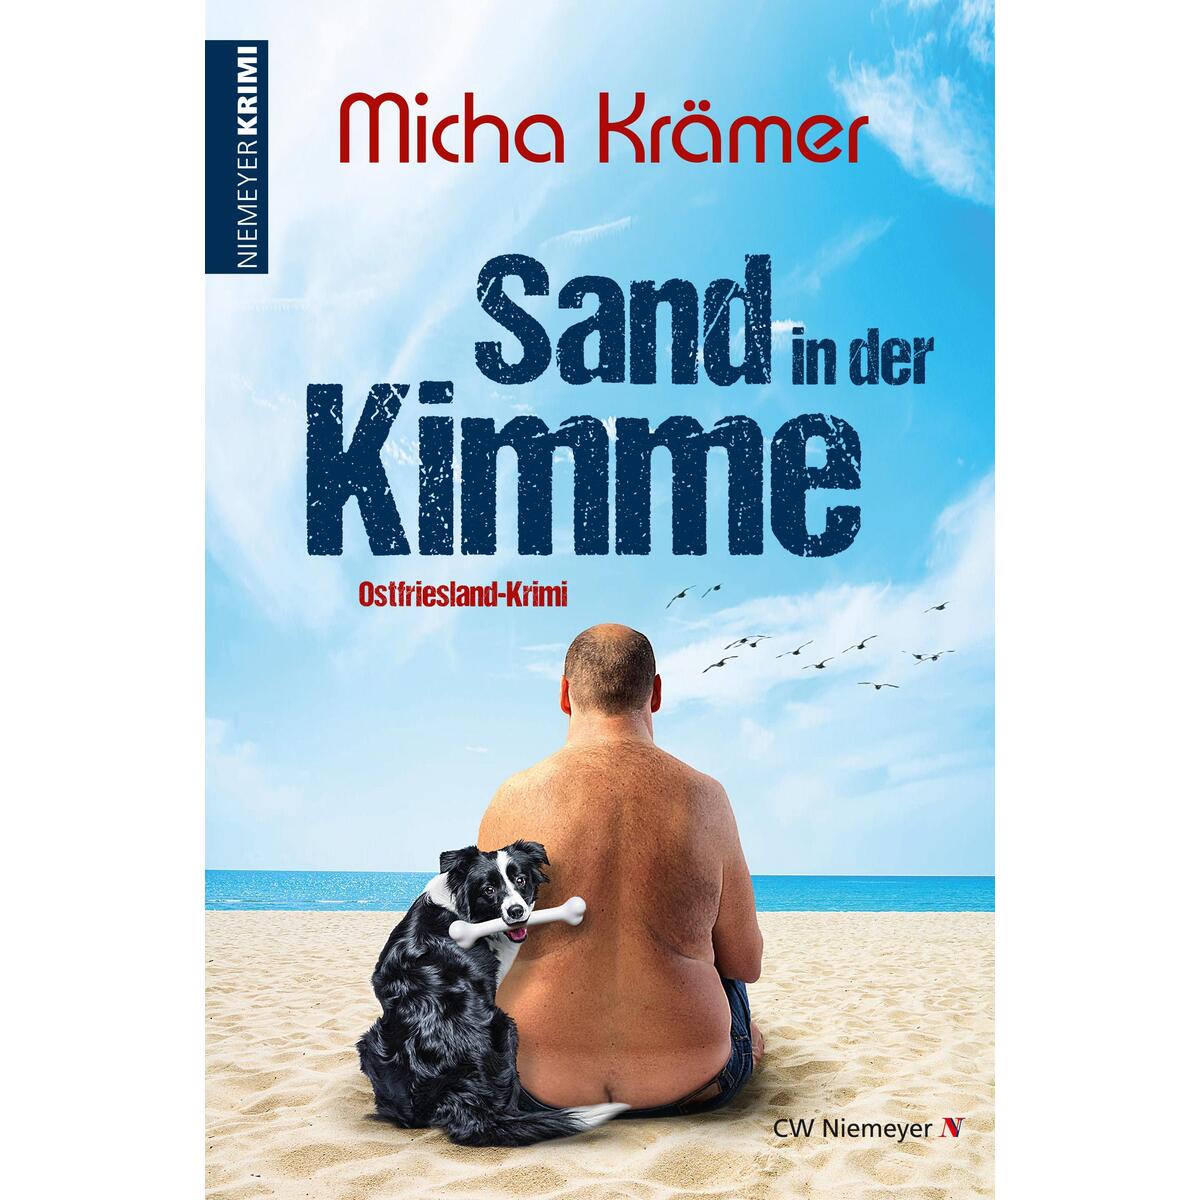 Sand in der Kimme von Niemeyer C.W. Buchverlage